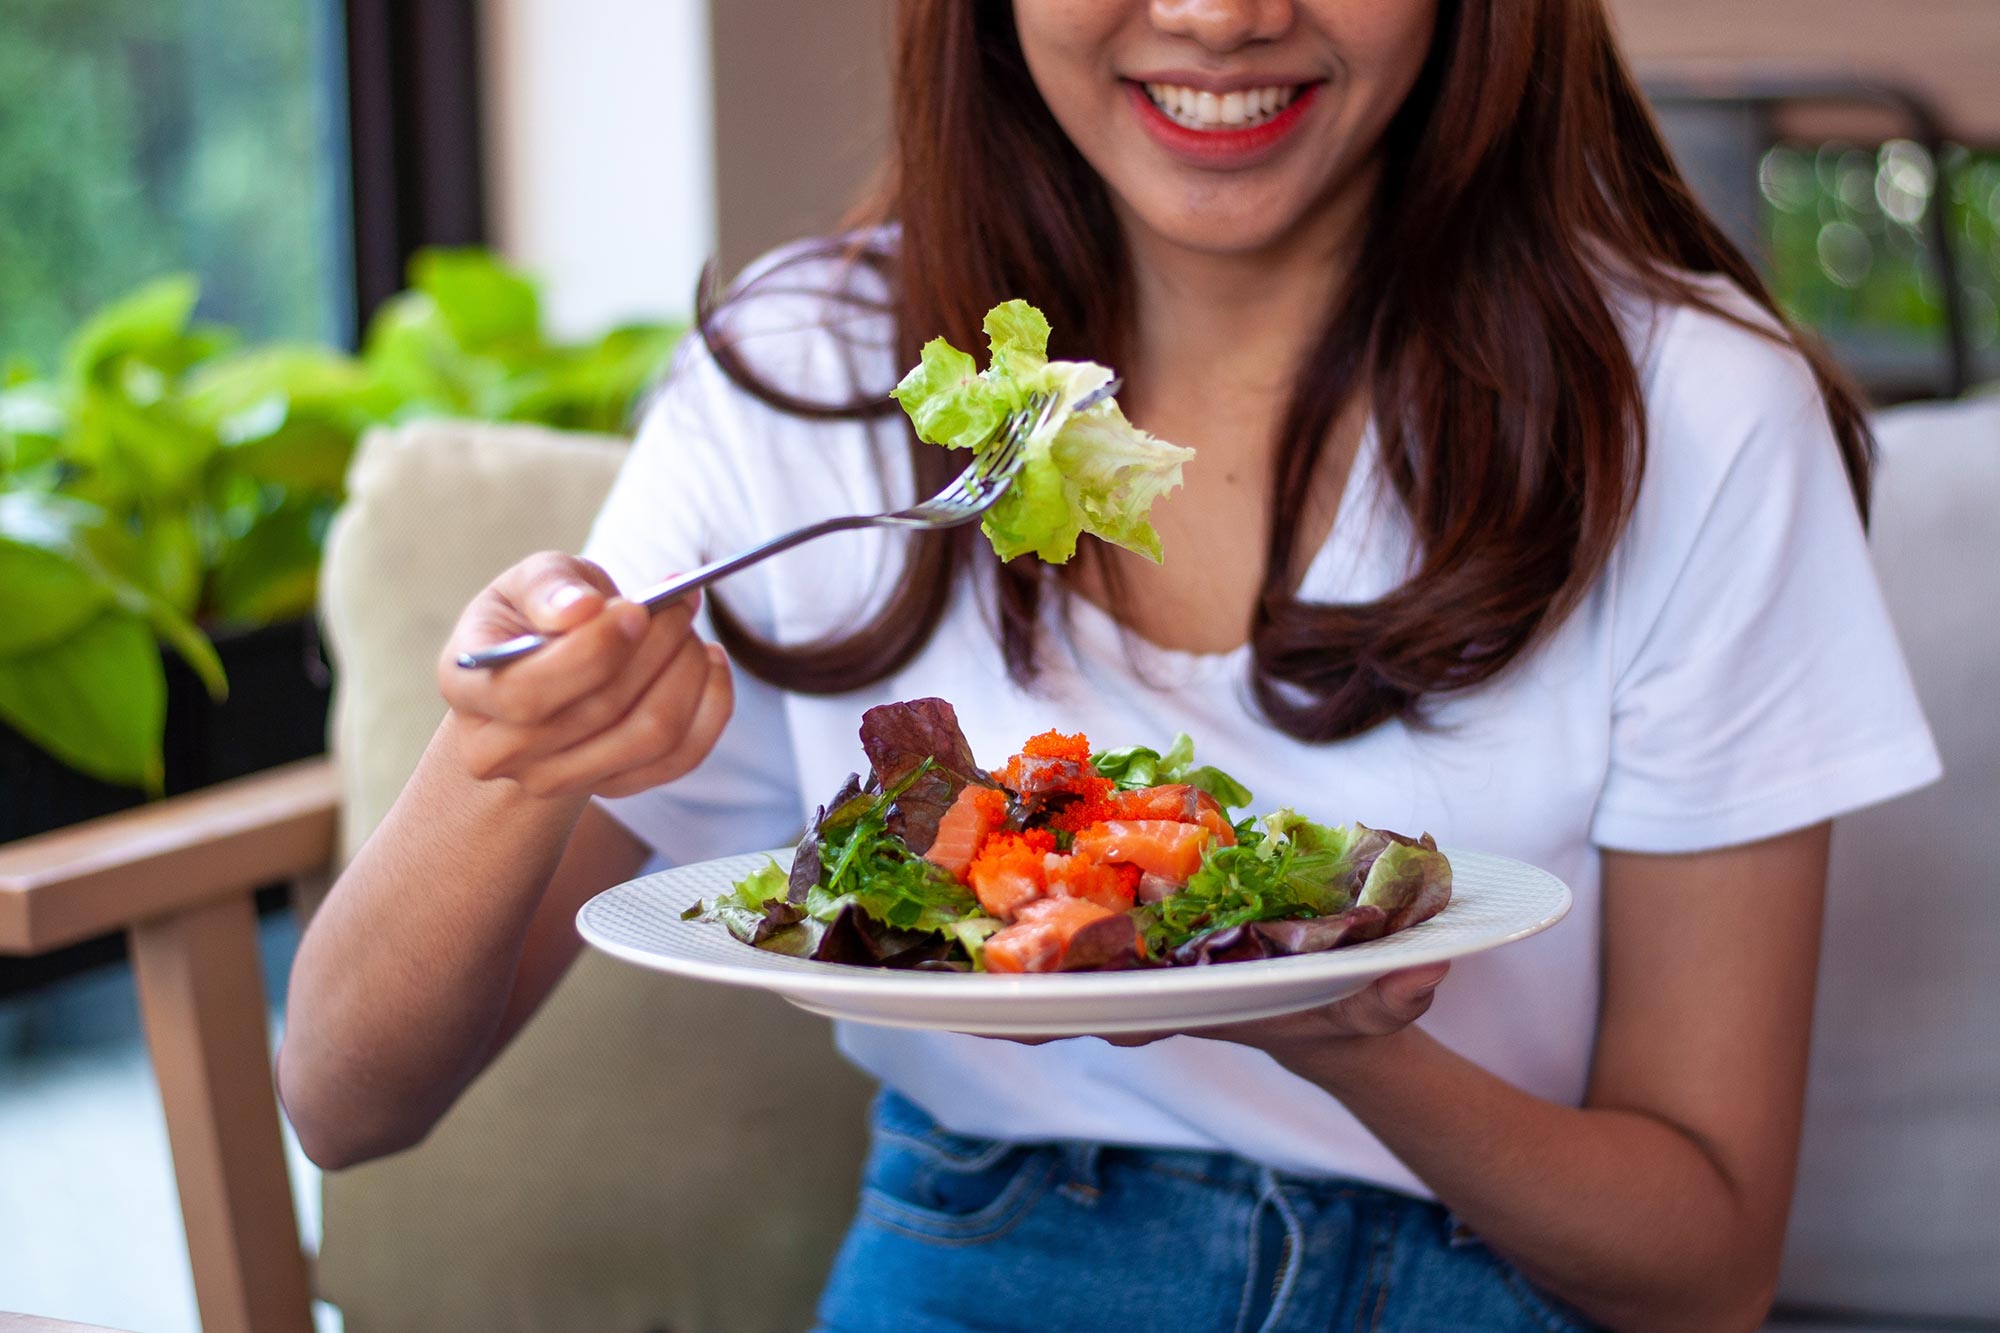 Young-Woman-Eating-Salad.jpg